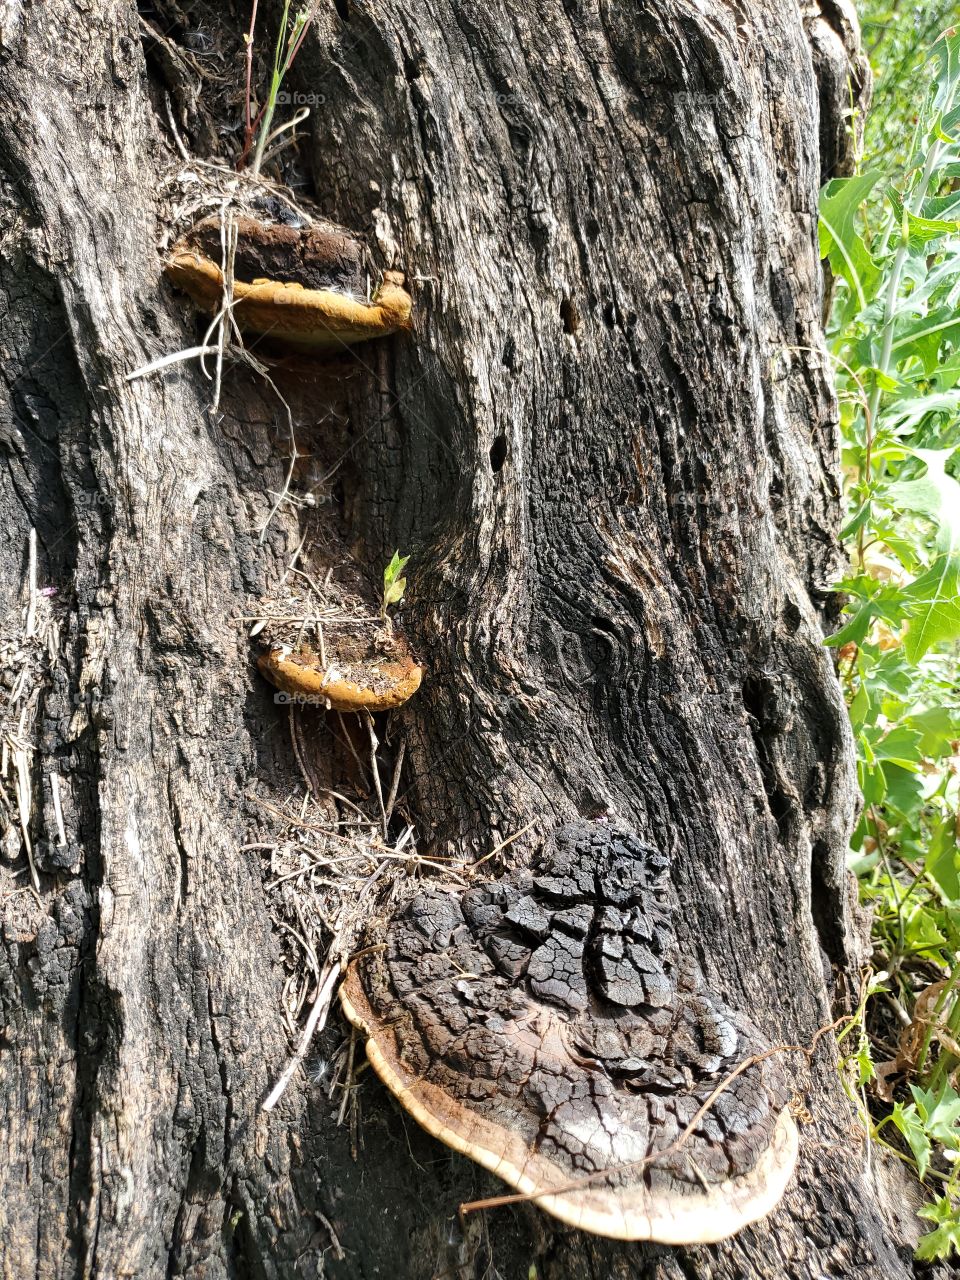 Three mushrooms on dead tree stump/base.